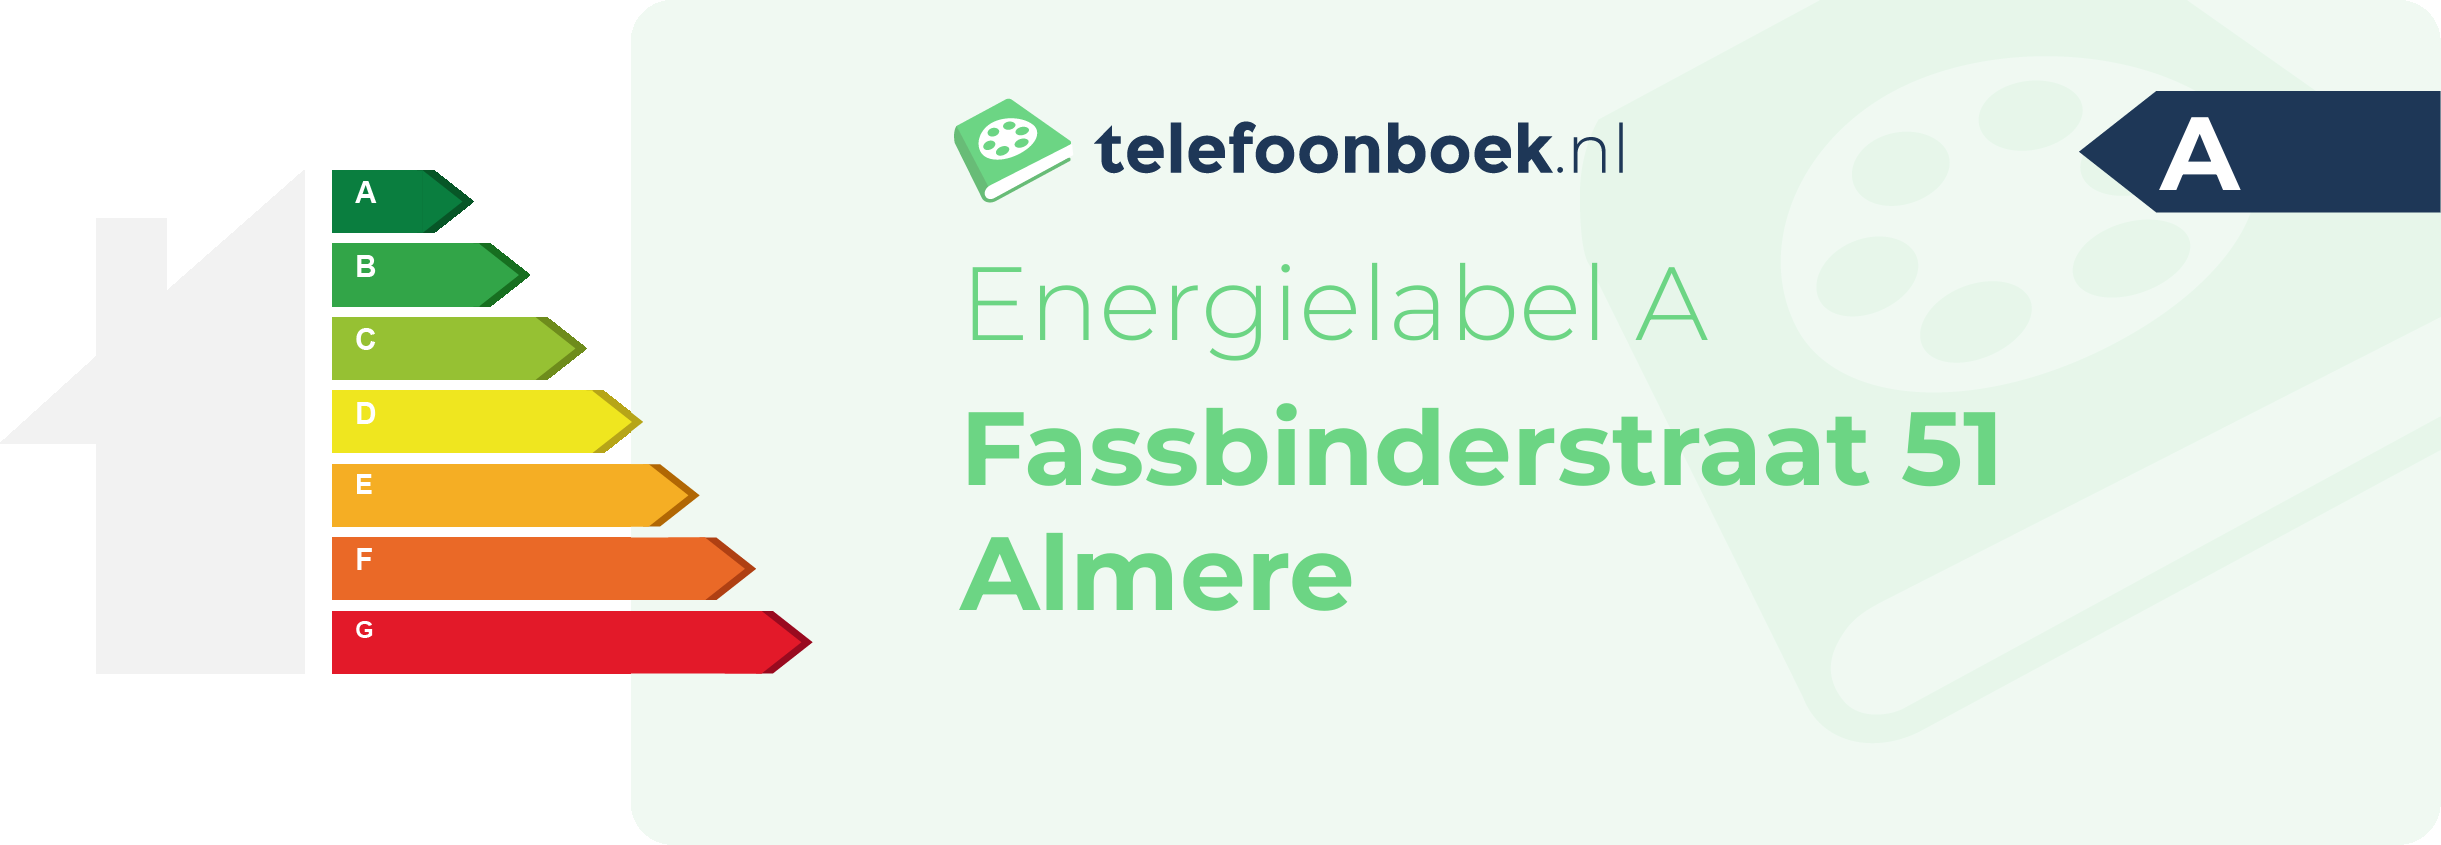 Energielabel Fassbinderstraat 51 Almere